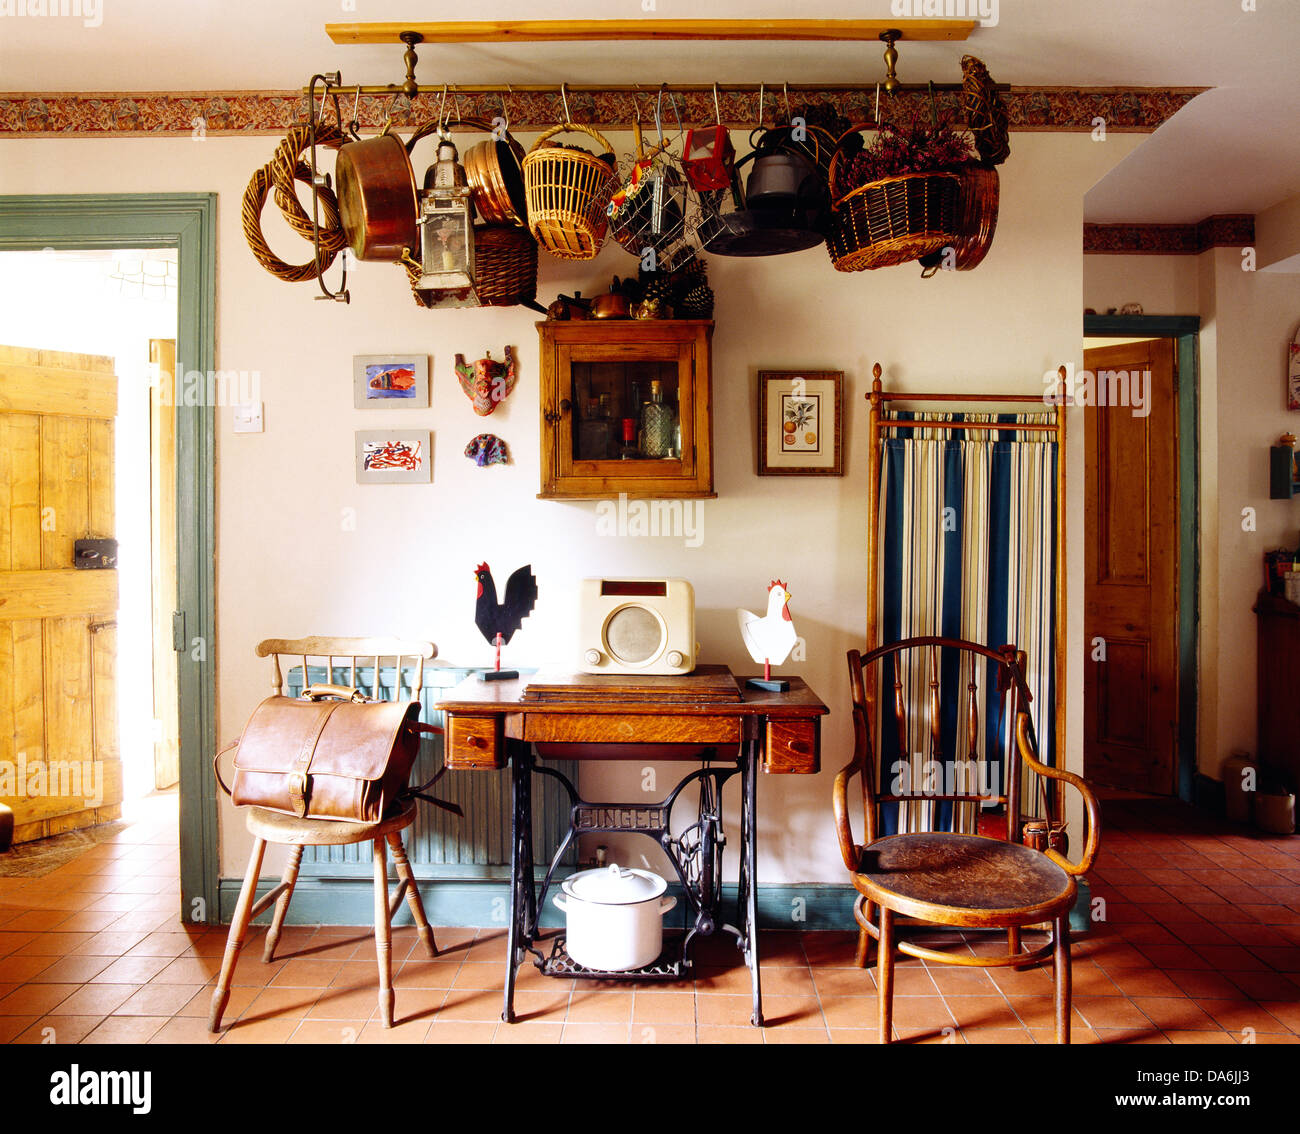 Sur Radio vieille machine à coudre table entre meubles anciens dans un style campagnard avec lanterne et la collection de paniers sur rack de plafond Banque D'Images